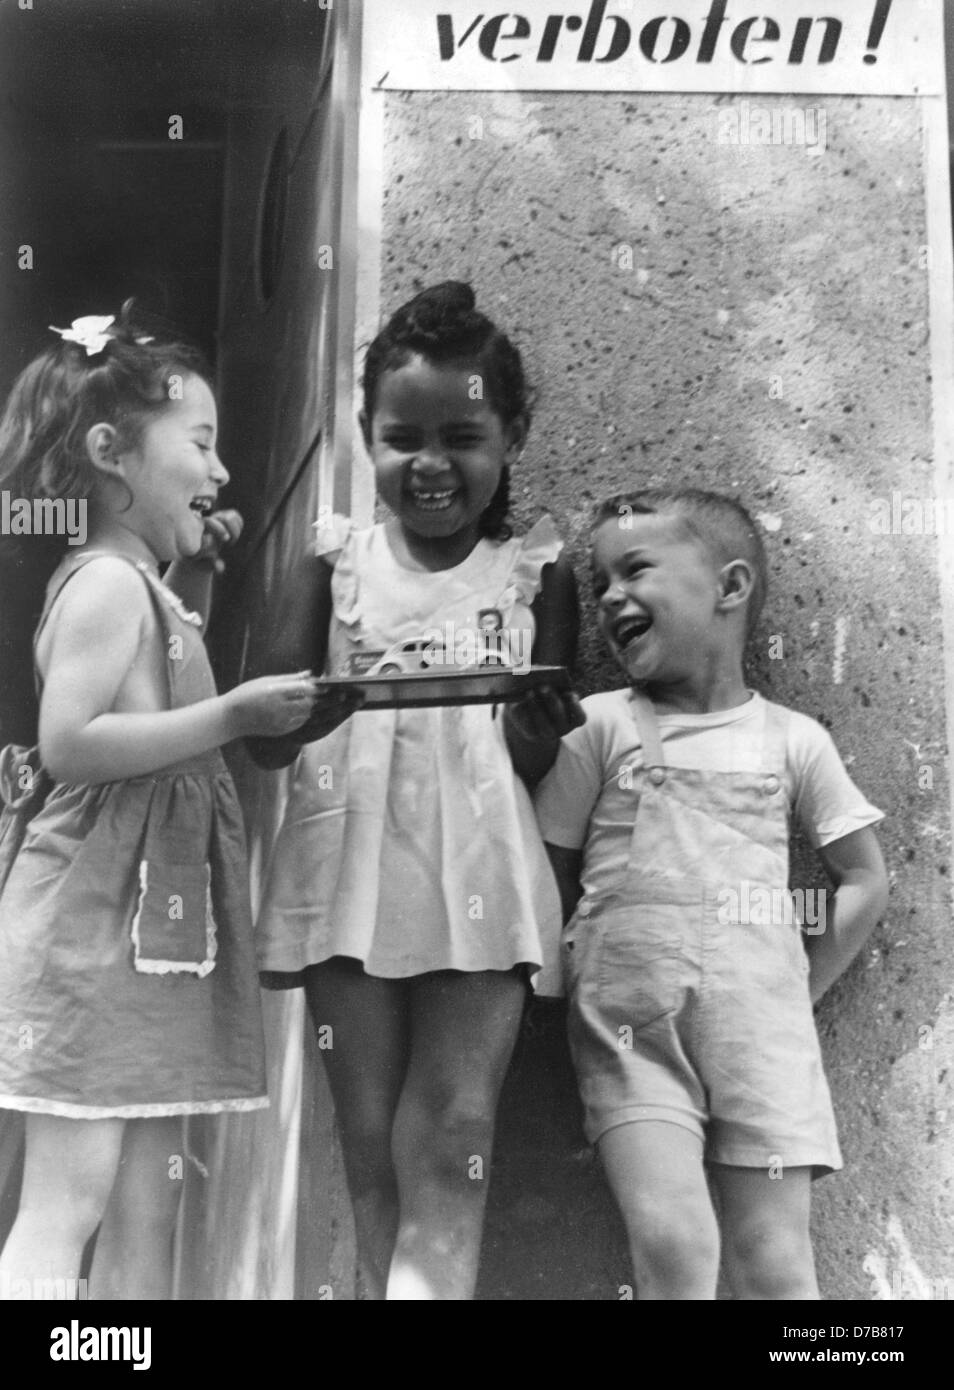 Tre bambini, uno di essi è la figlia di un colorato soldato alleato e una donna tedesca e una cosiddetta 'occupazione bambino', giocare insieme allegramente (foto scattata negli anni cinquanta). Foto Stock